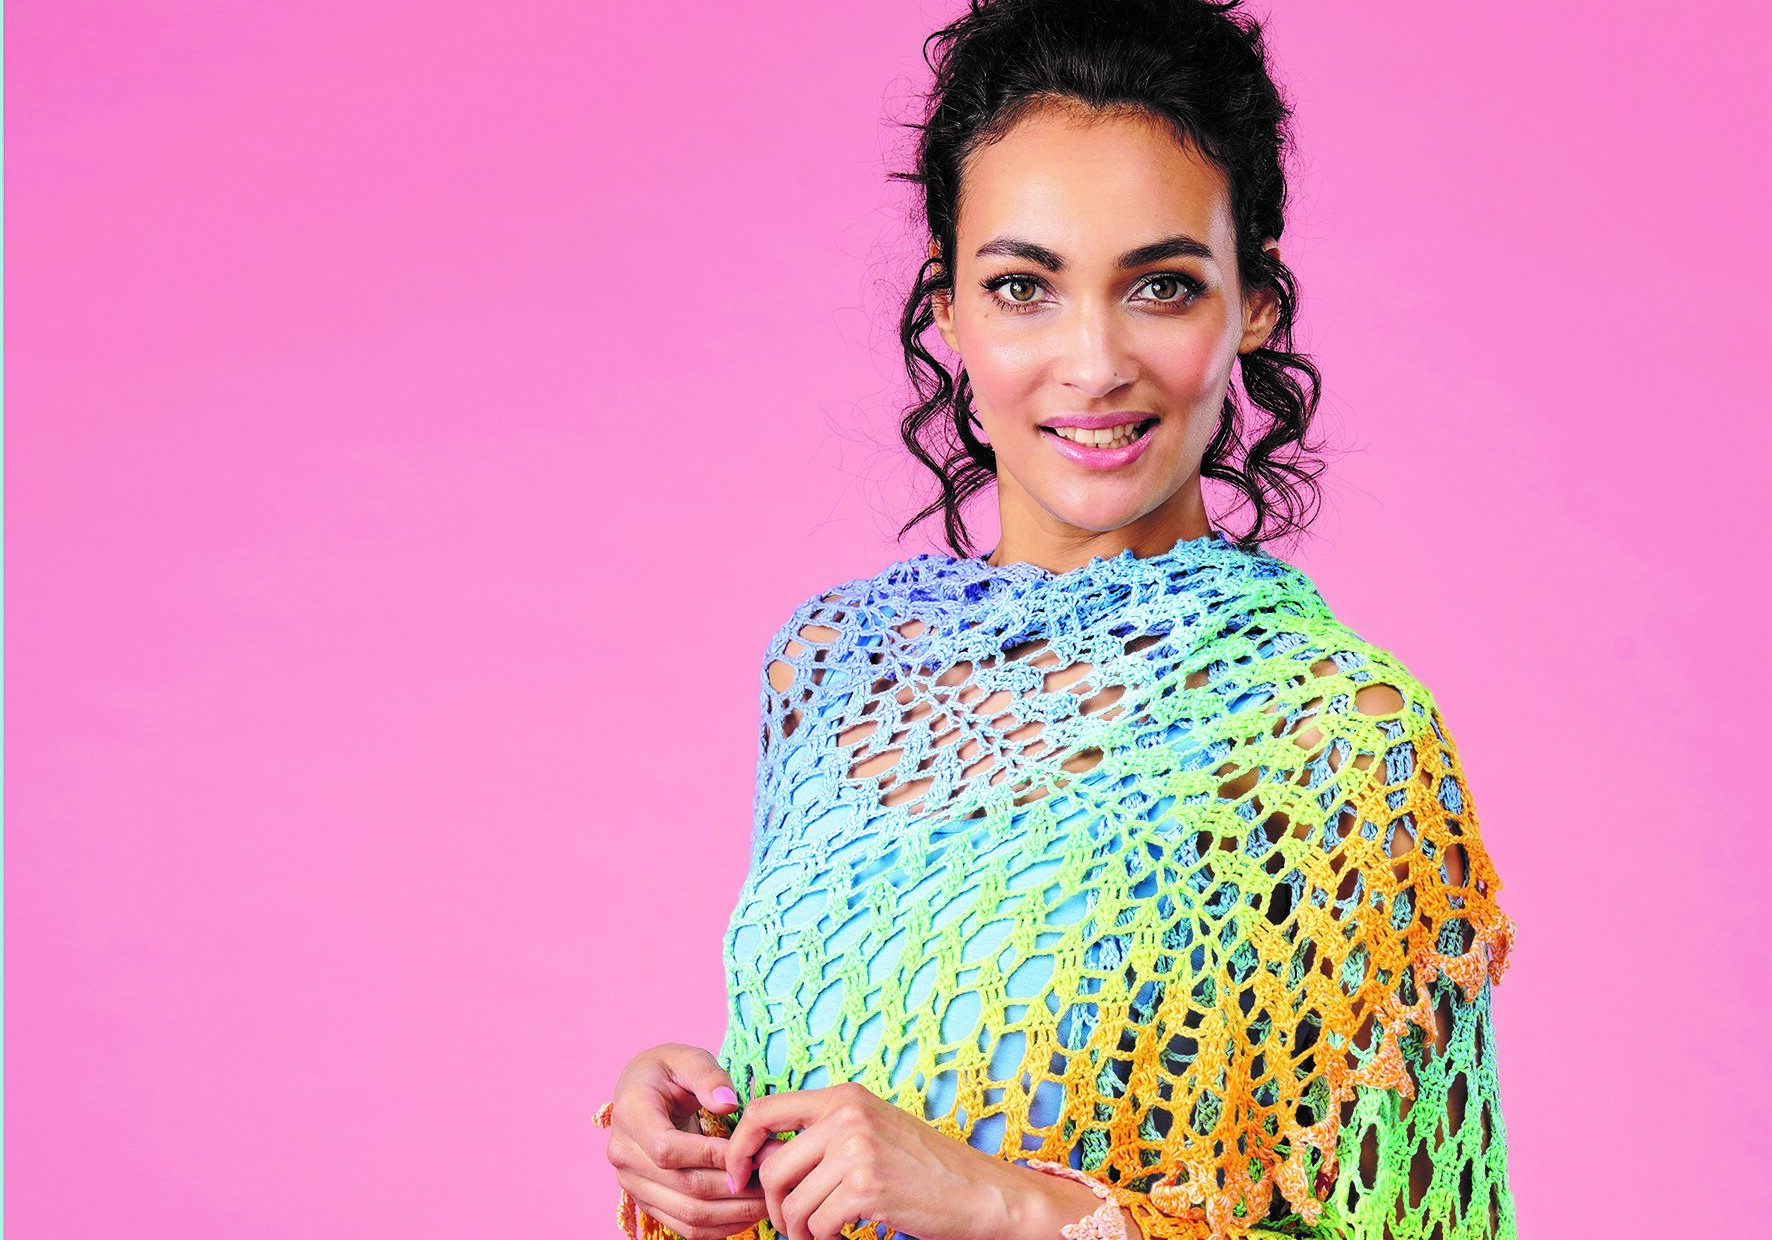 crochet story shot on model in the studio